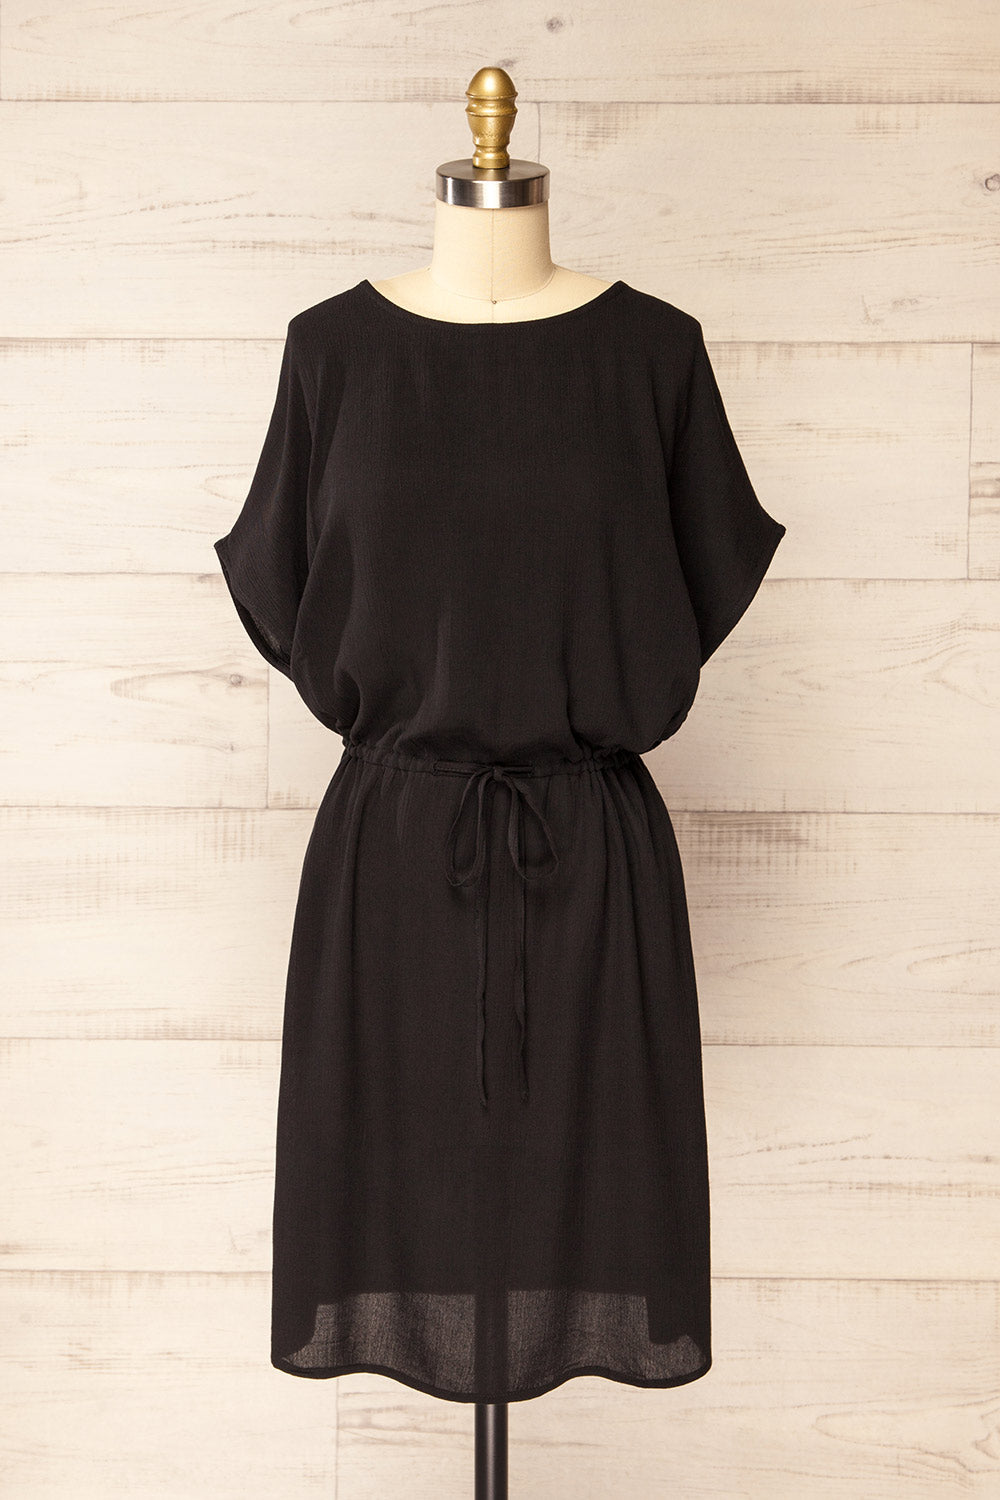 Ababa Black Oversized Short Dress | La petite garçonne front view